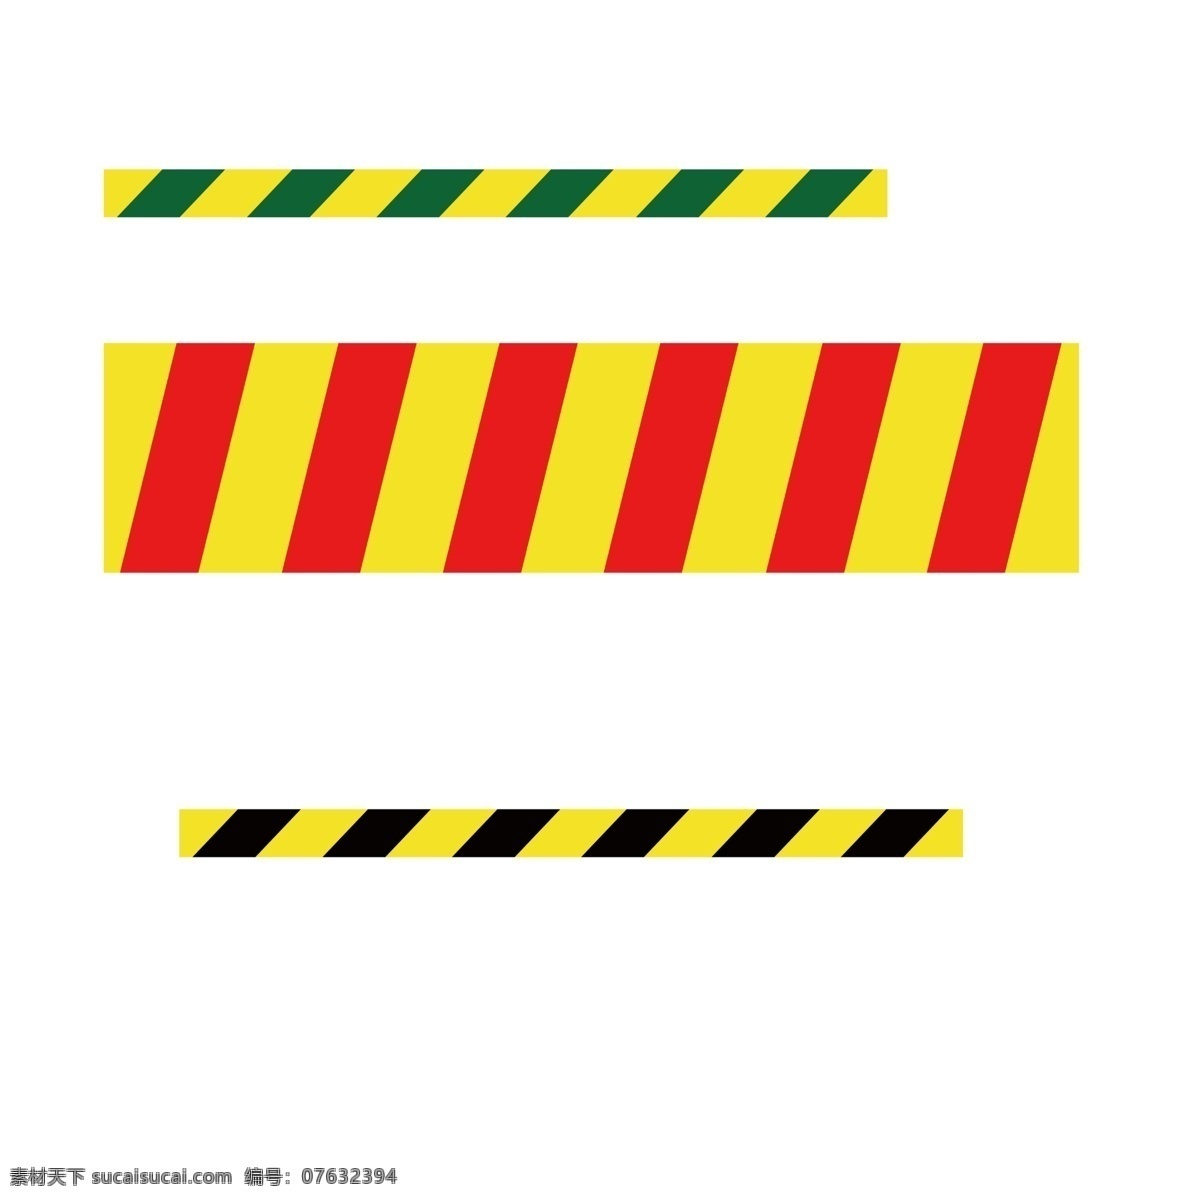 安全线 建筑工地 一米线 距离线 标志图标 公共标识标志